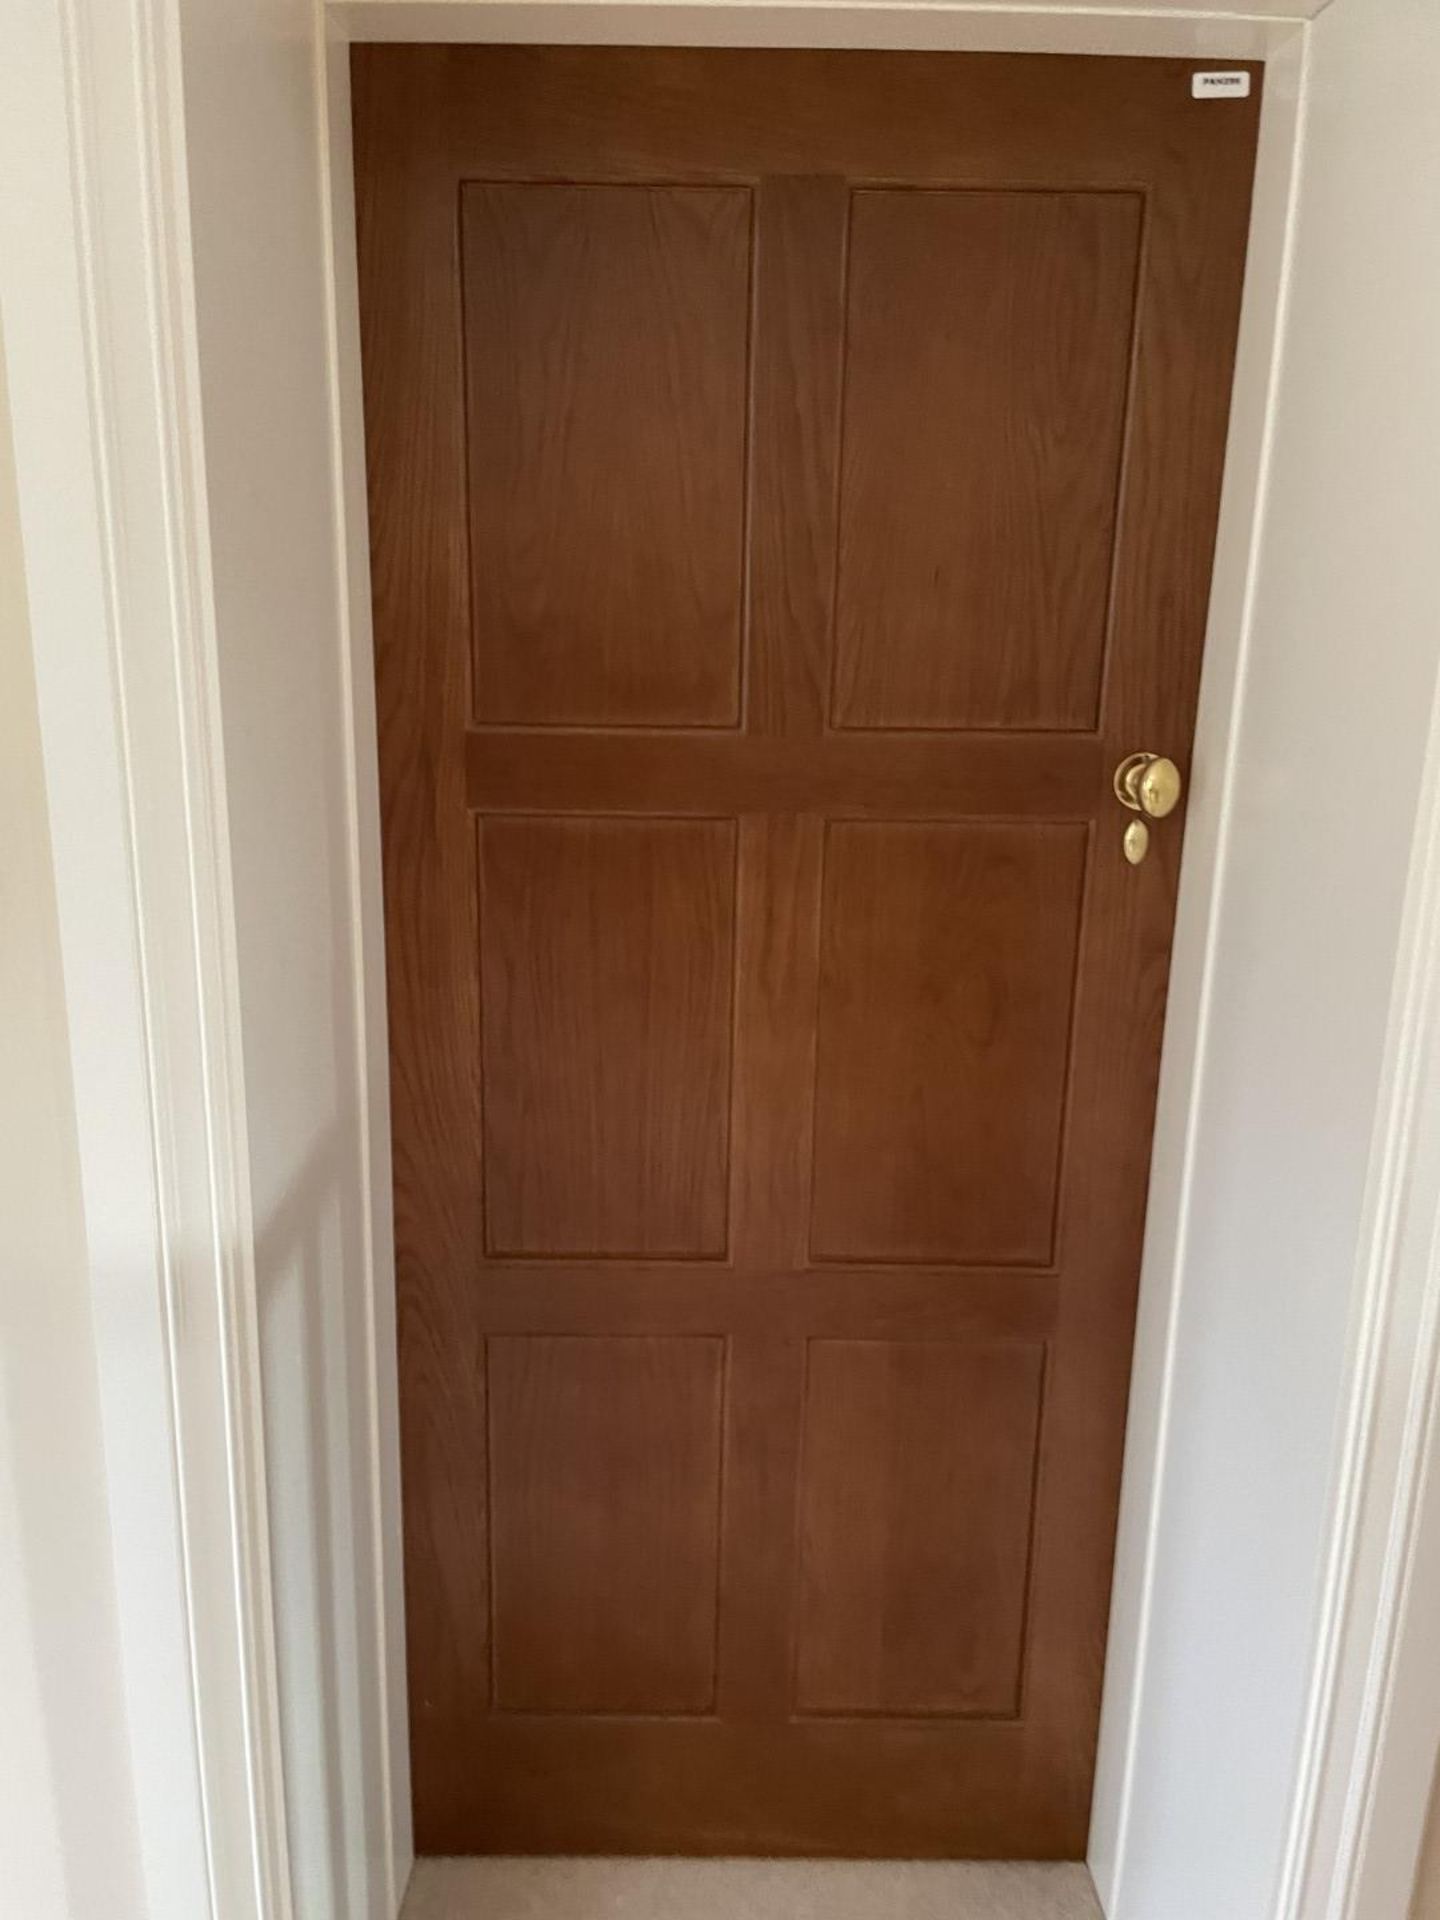 1 x Solid Oak Wooden Lockable Internal Door - Includes Handles and Hinges - Ref: PAN286 / - Image 9 of 17